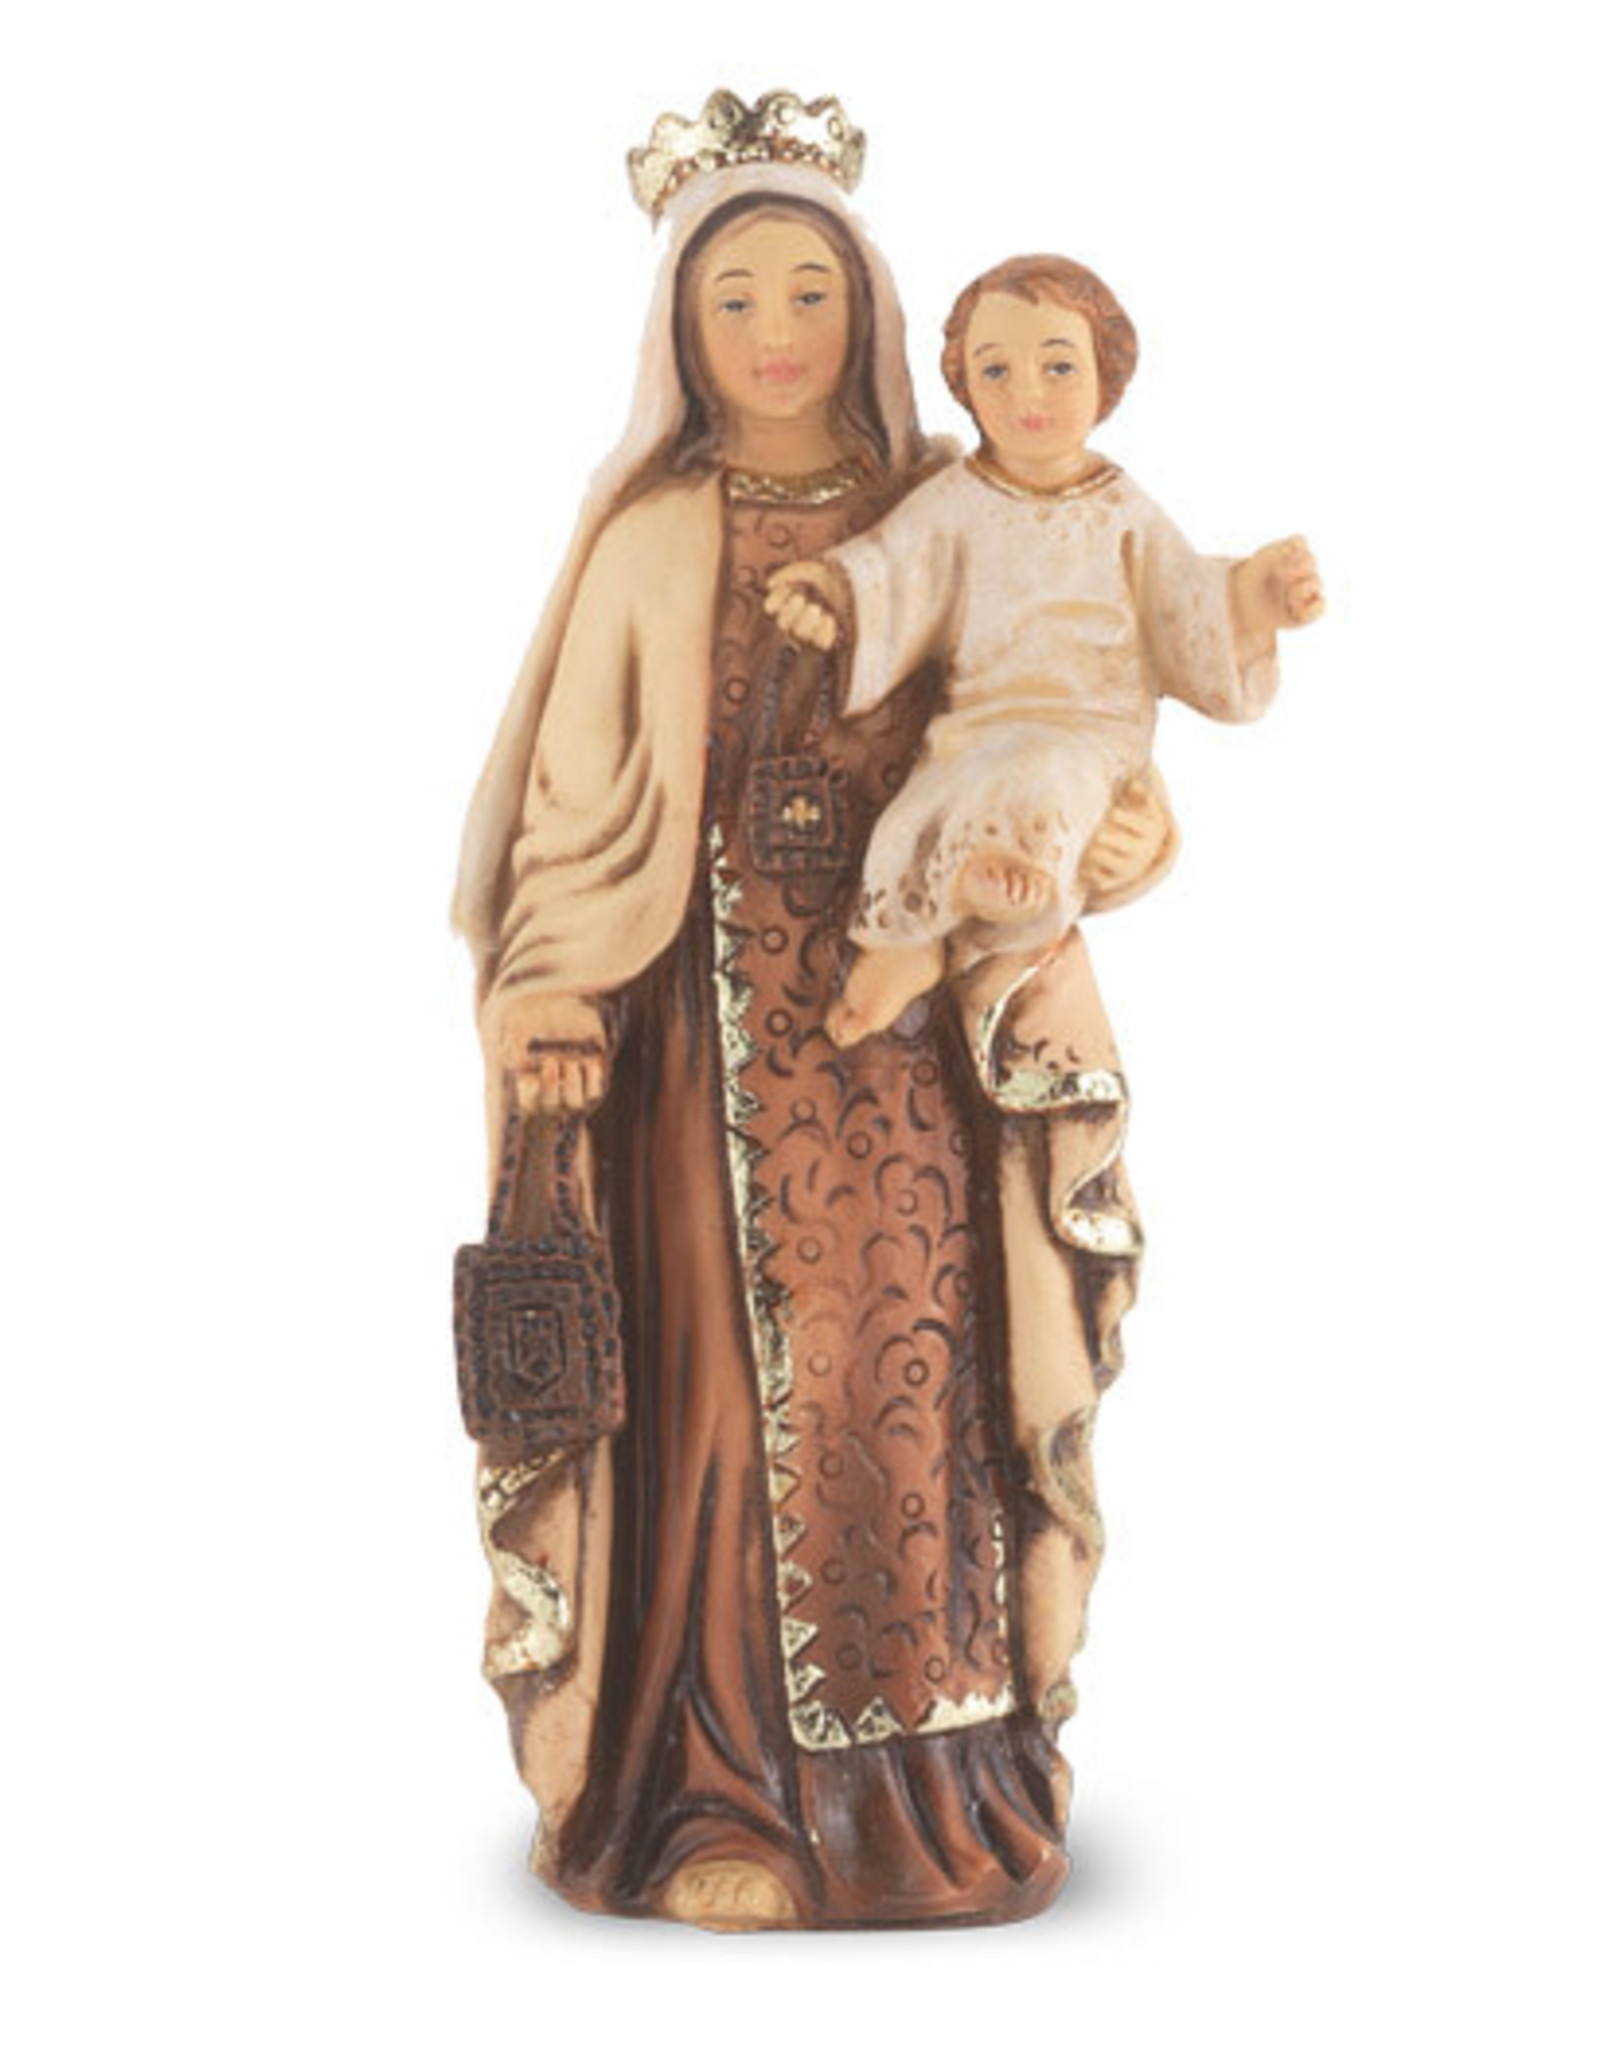 Hirten Patron Saint Statue - Our Lady of Mount Carmel